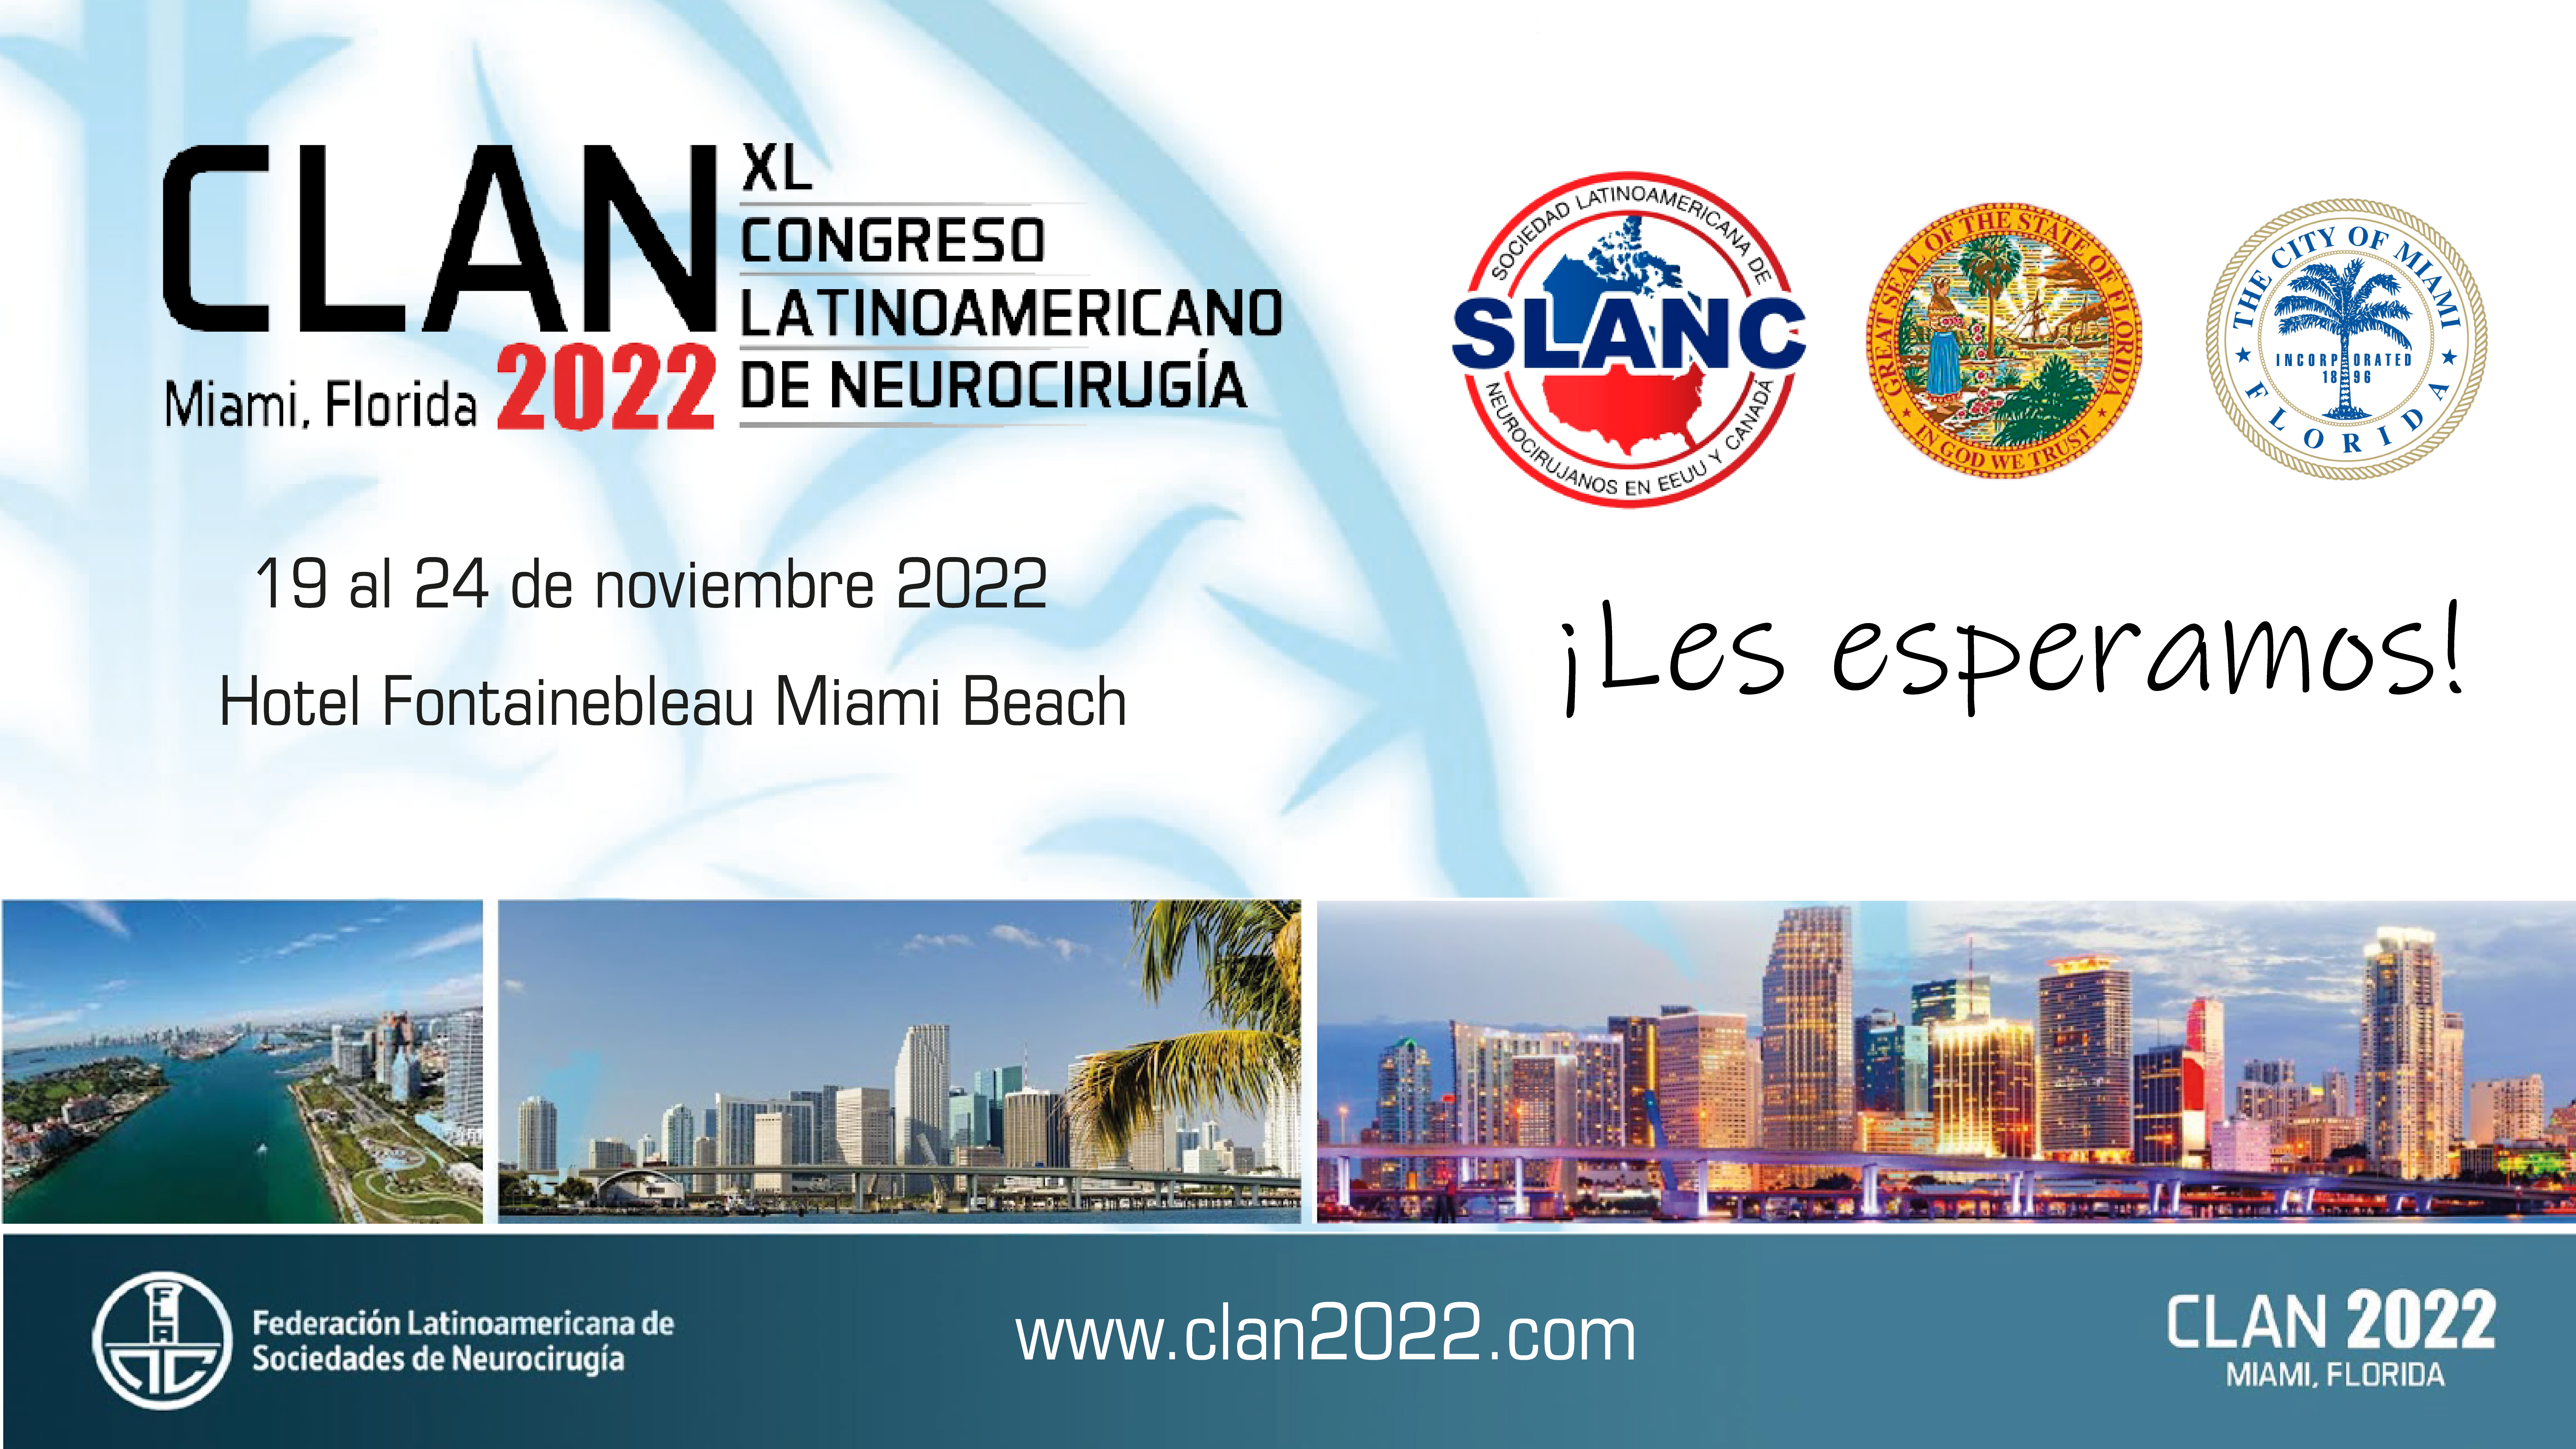 XL CLAN Miami del 19 al 24 de noviembre de 2022